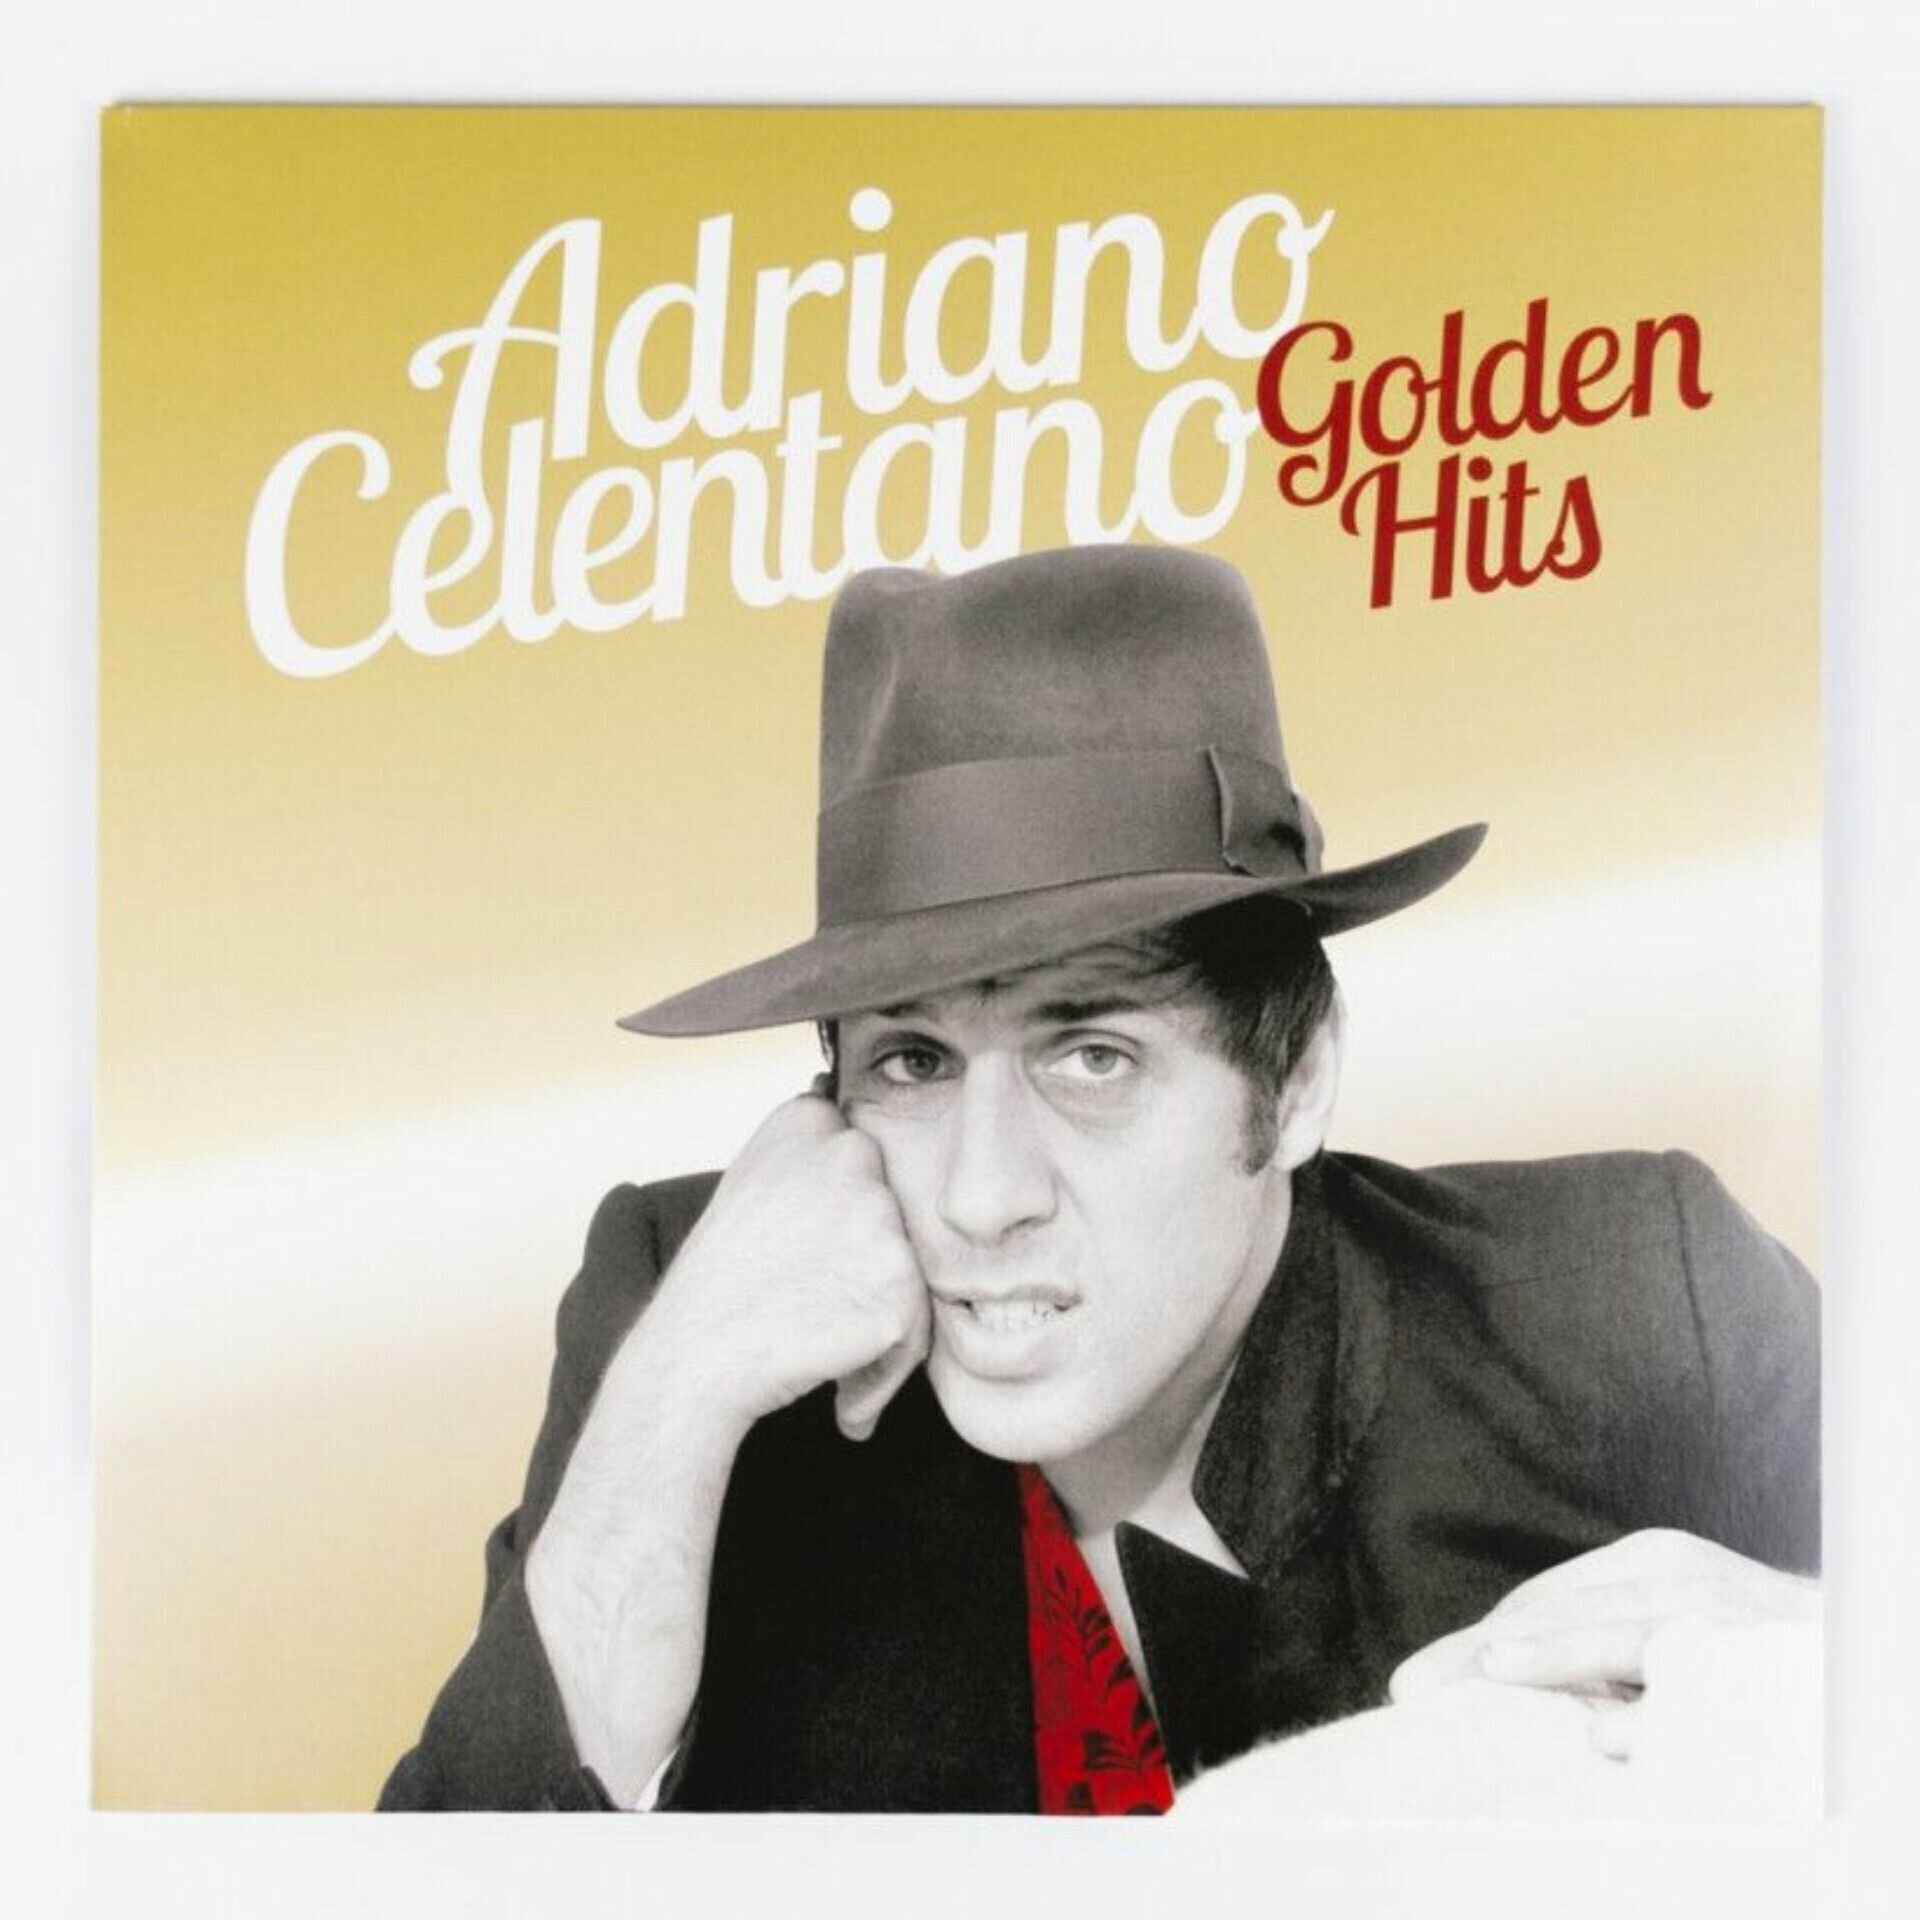 Виниловая пластинка Celentano Adriano - Golden Hits, LP